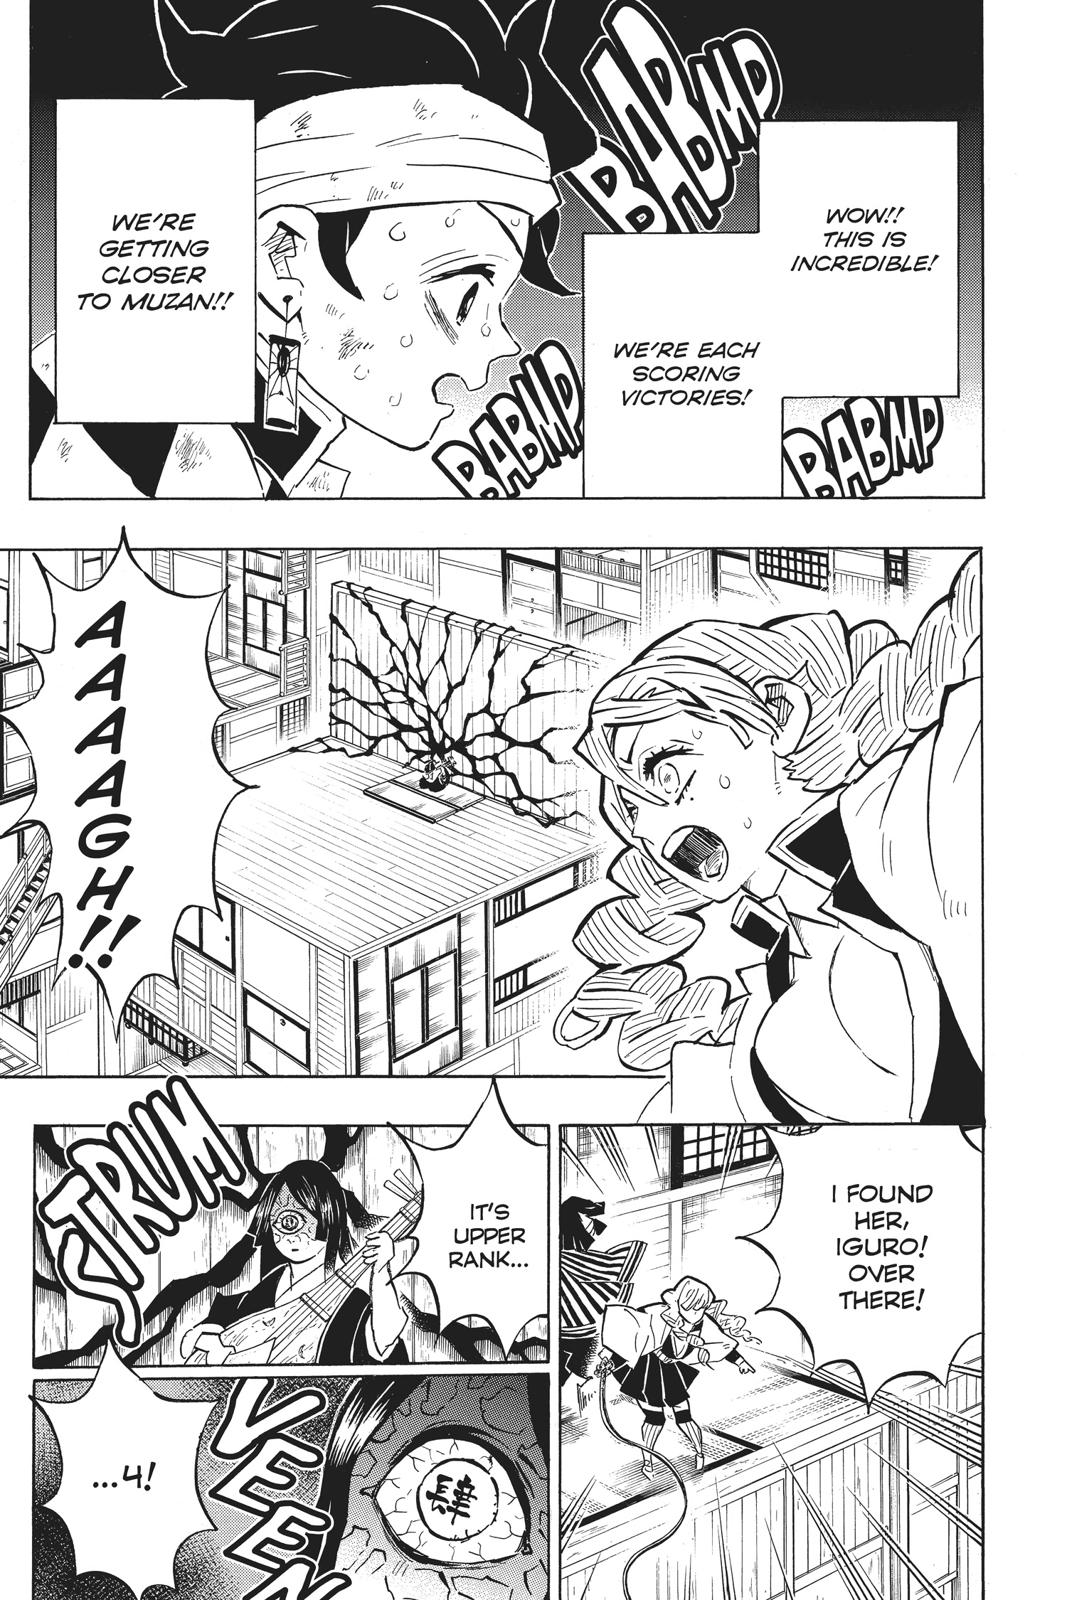 Demon Slayer Manga Manga Chapter - 164 - image 3